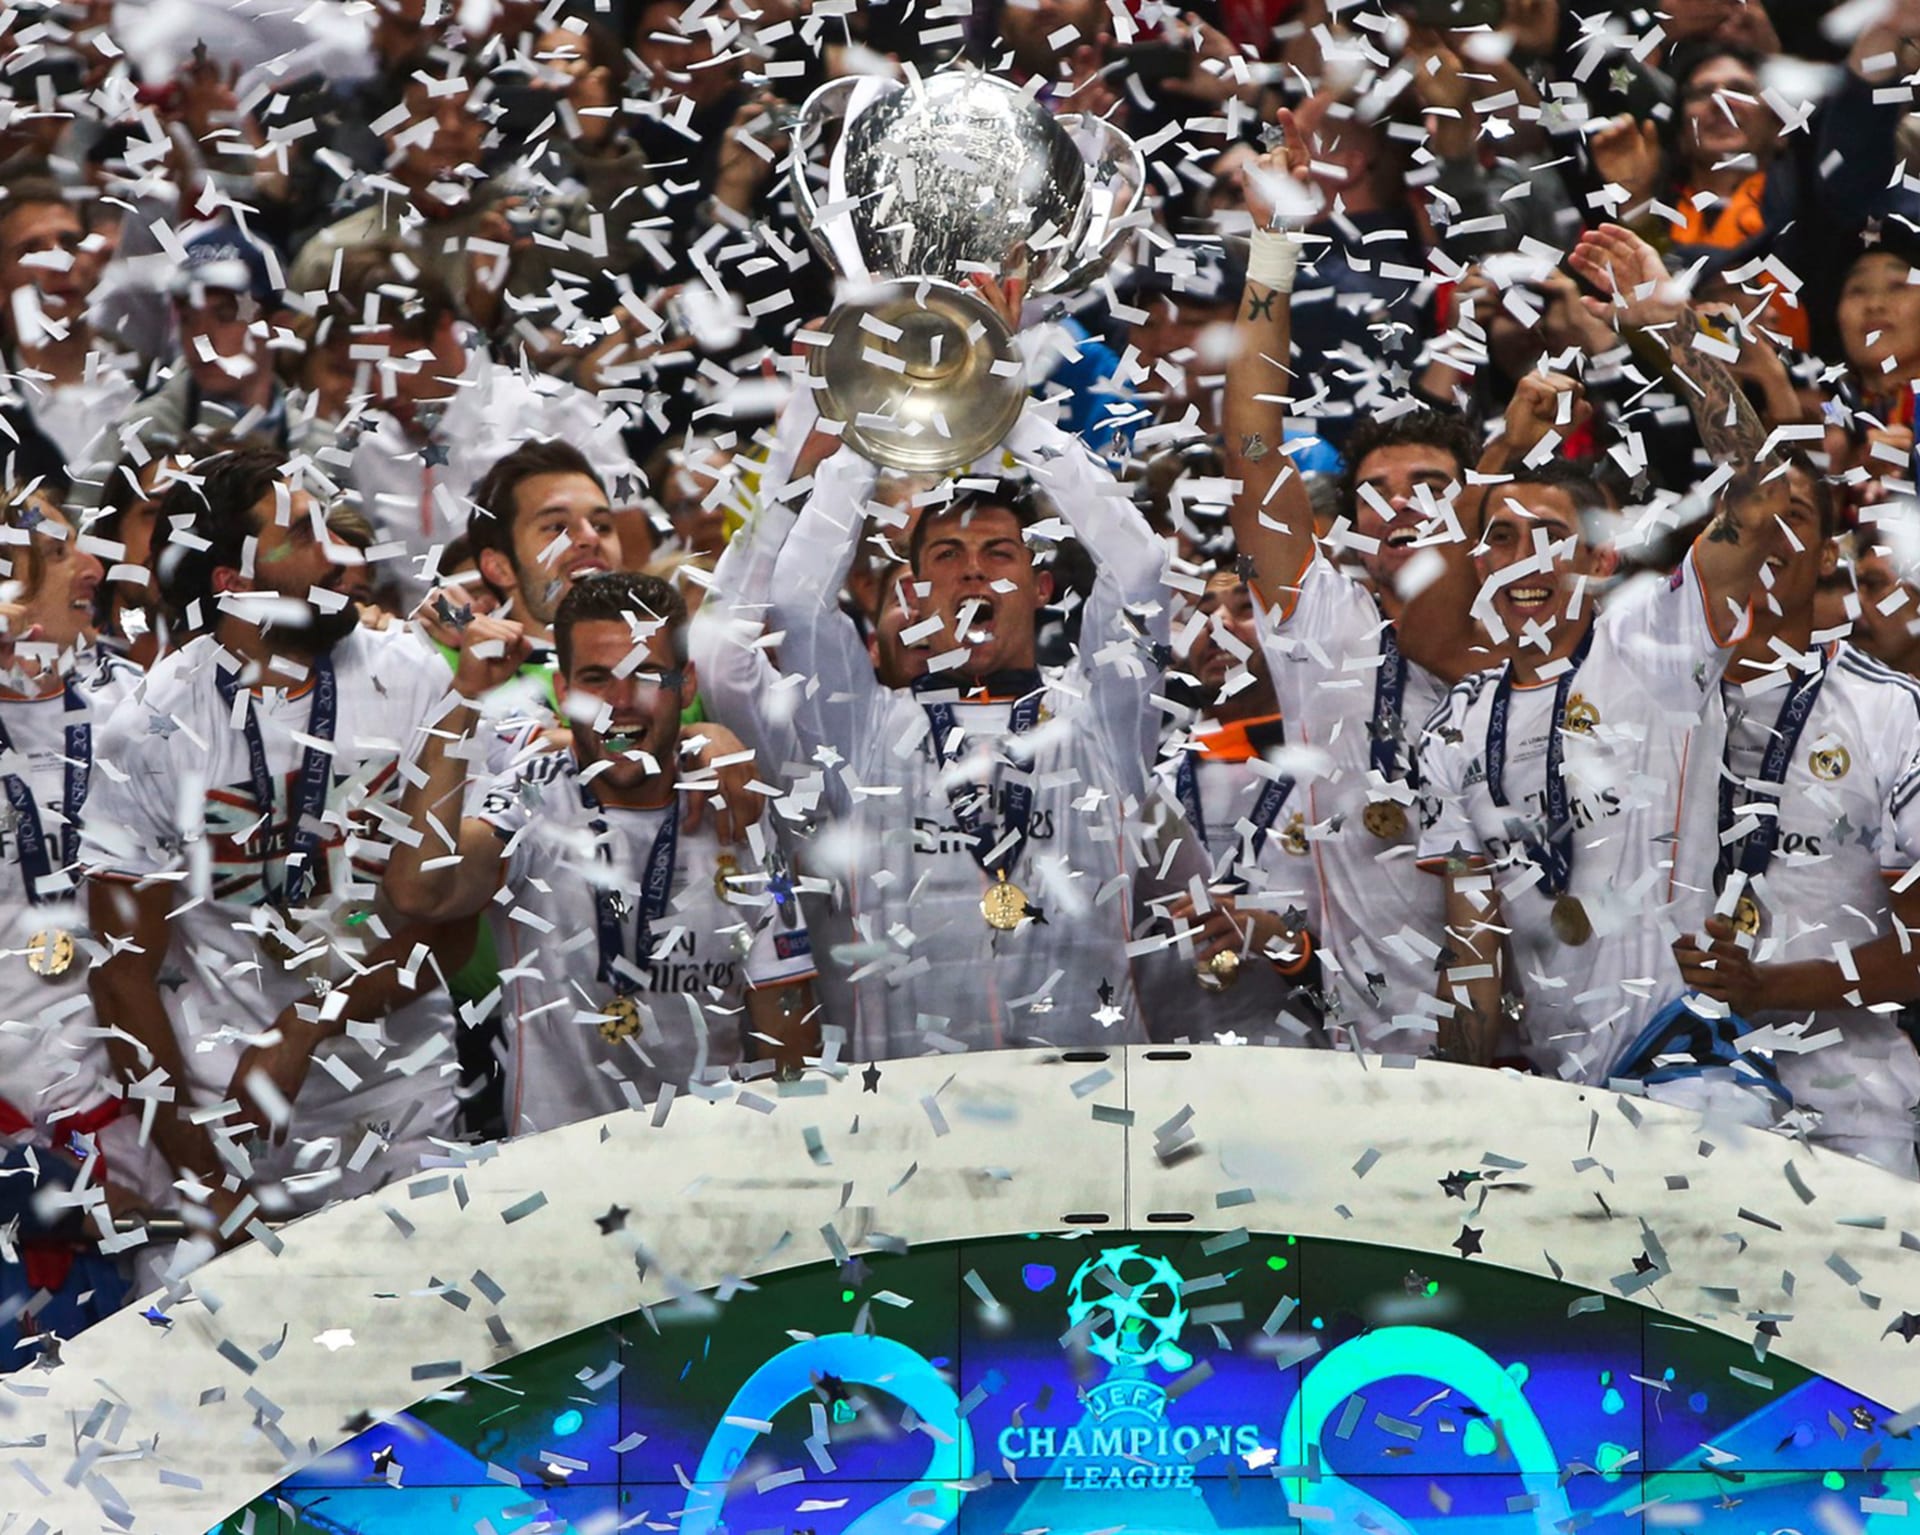 První finále, kde se střetly dokonce kluby z jednoho města, si Champions League zapsala do letopisů v roce 2014. Po drtivém prodloužení zdvihli nad hlavy pohár pro vítěze hráči Realu Madrid.